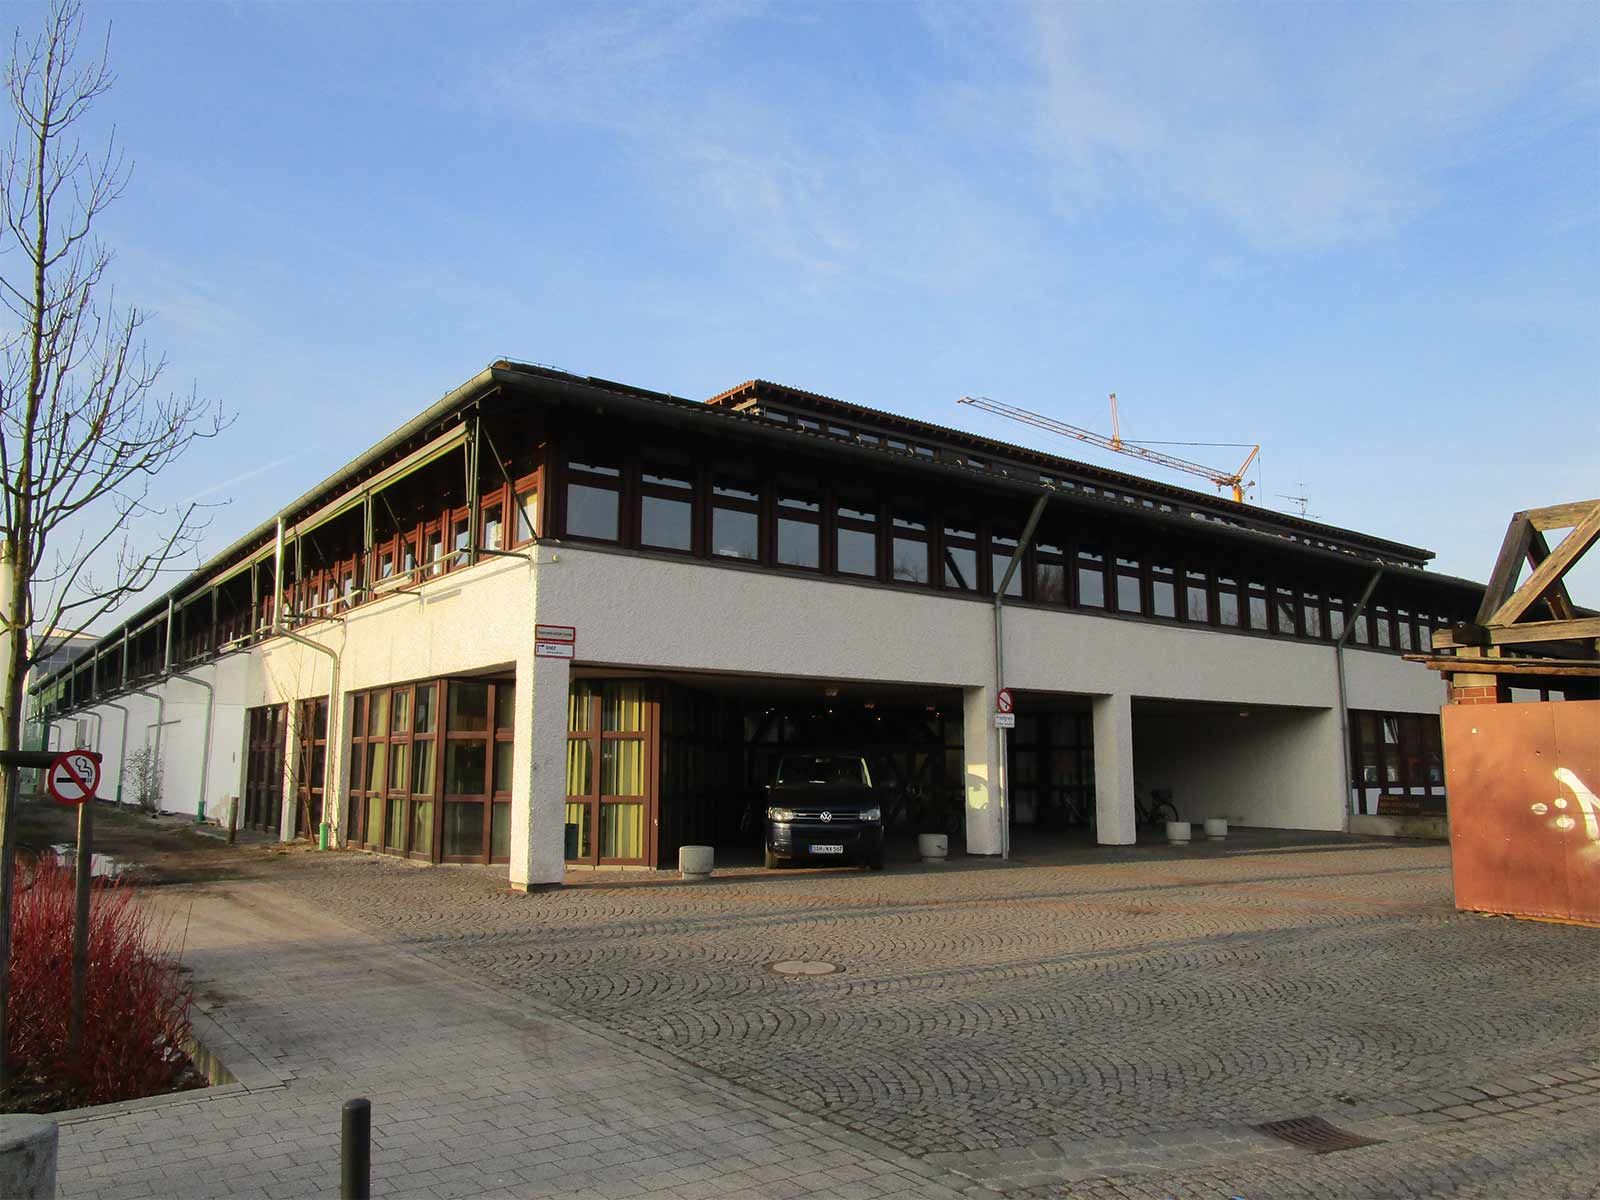 Berufsschule Dachau